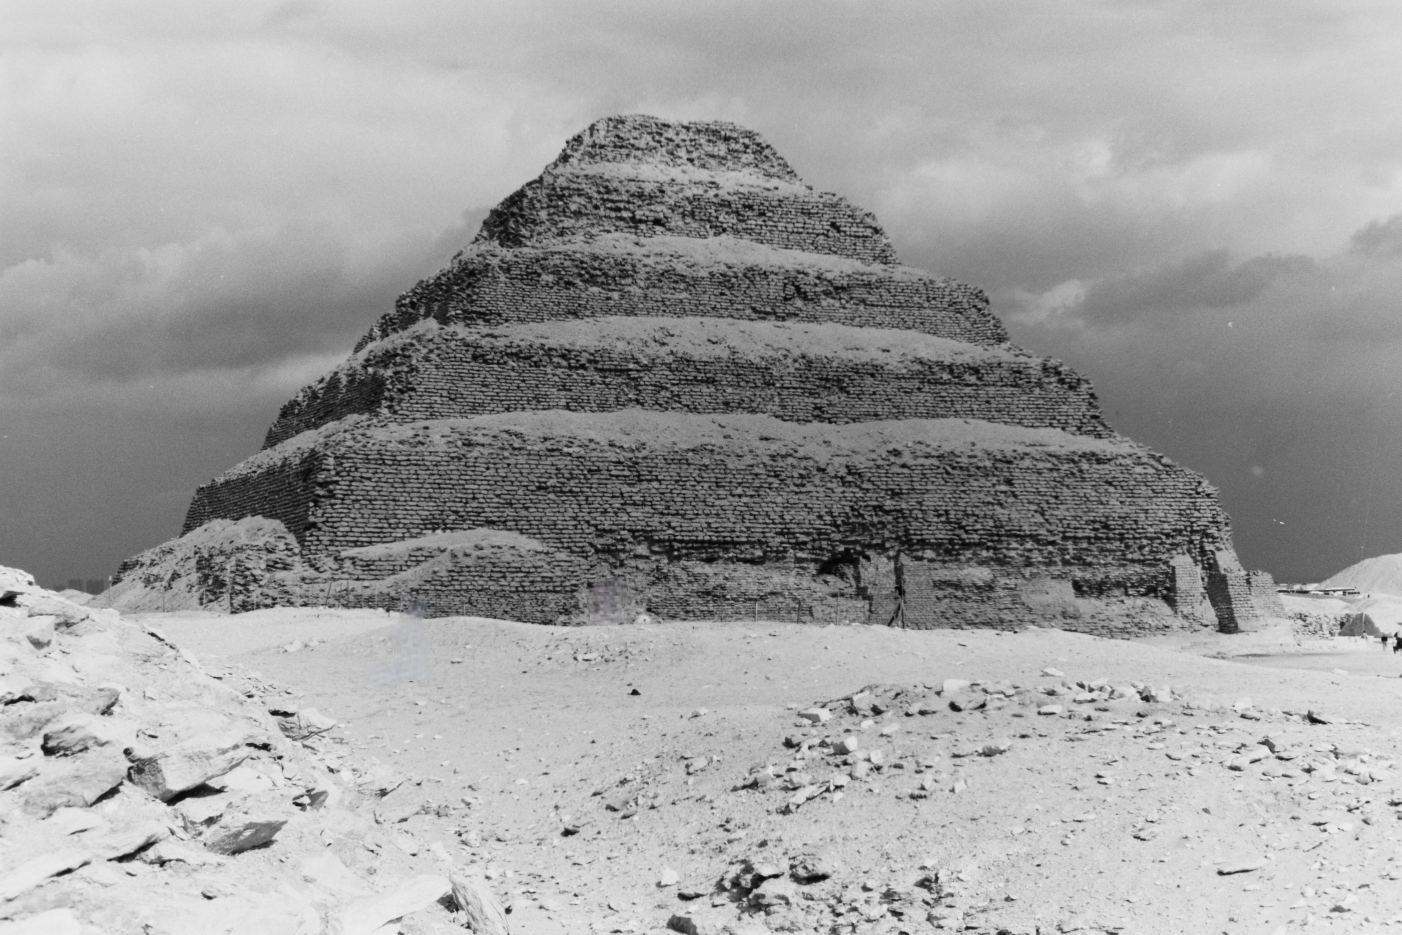 ძვ.წ. 440 წ. ტექსტში მოხსენიებული უცნობი წარმოშობის მოწინავე მანქანები, შესაძლოა, ეგვიპტის პირამიდების მშენებლობას შეუწყო ხელი 2